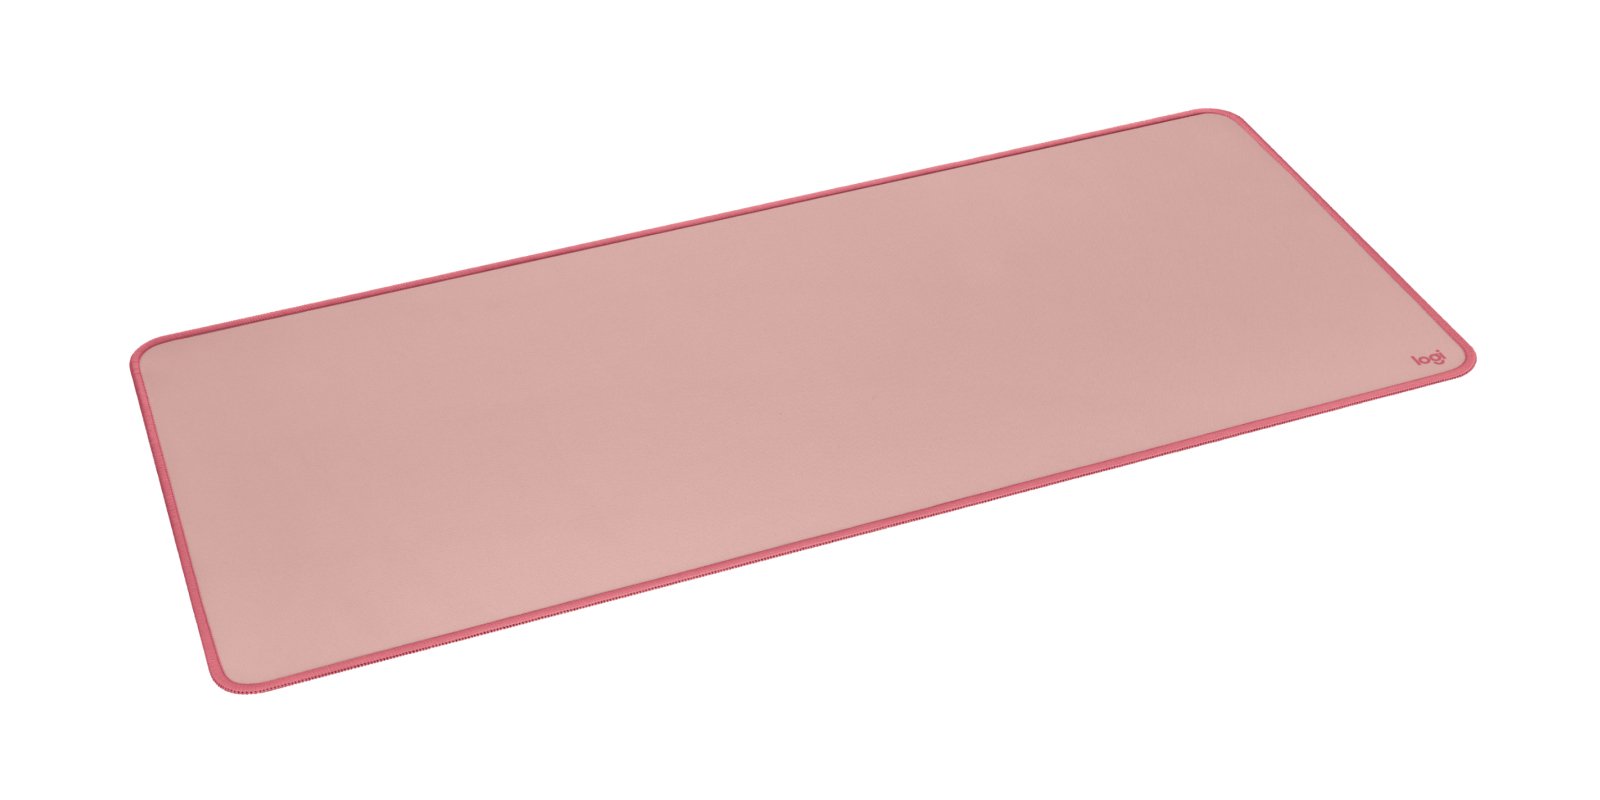 Logitech Mouse pad MPADRO / 956-000053 Pink